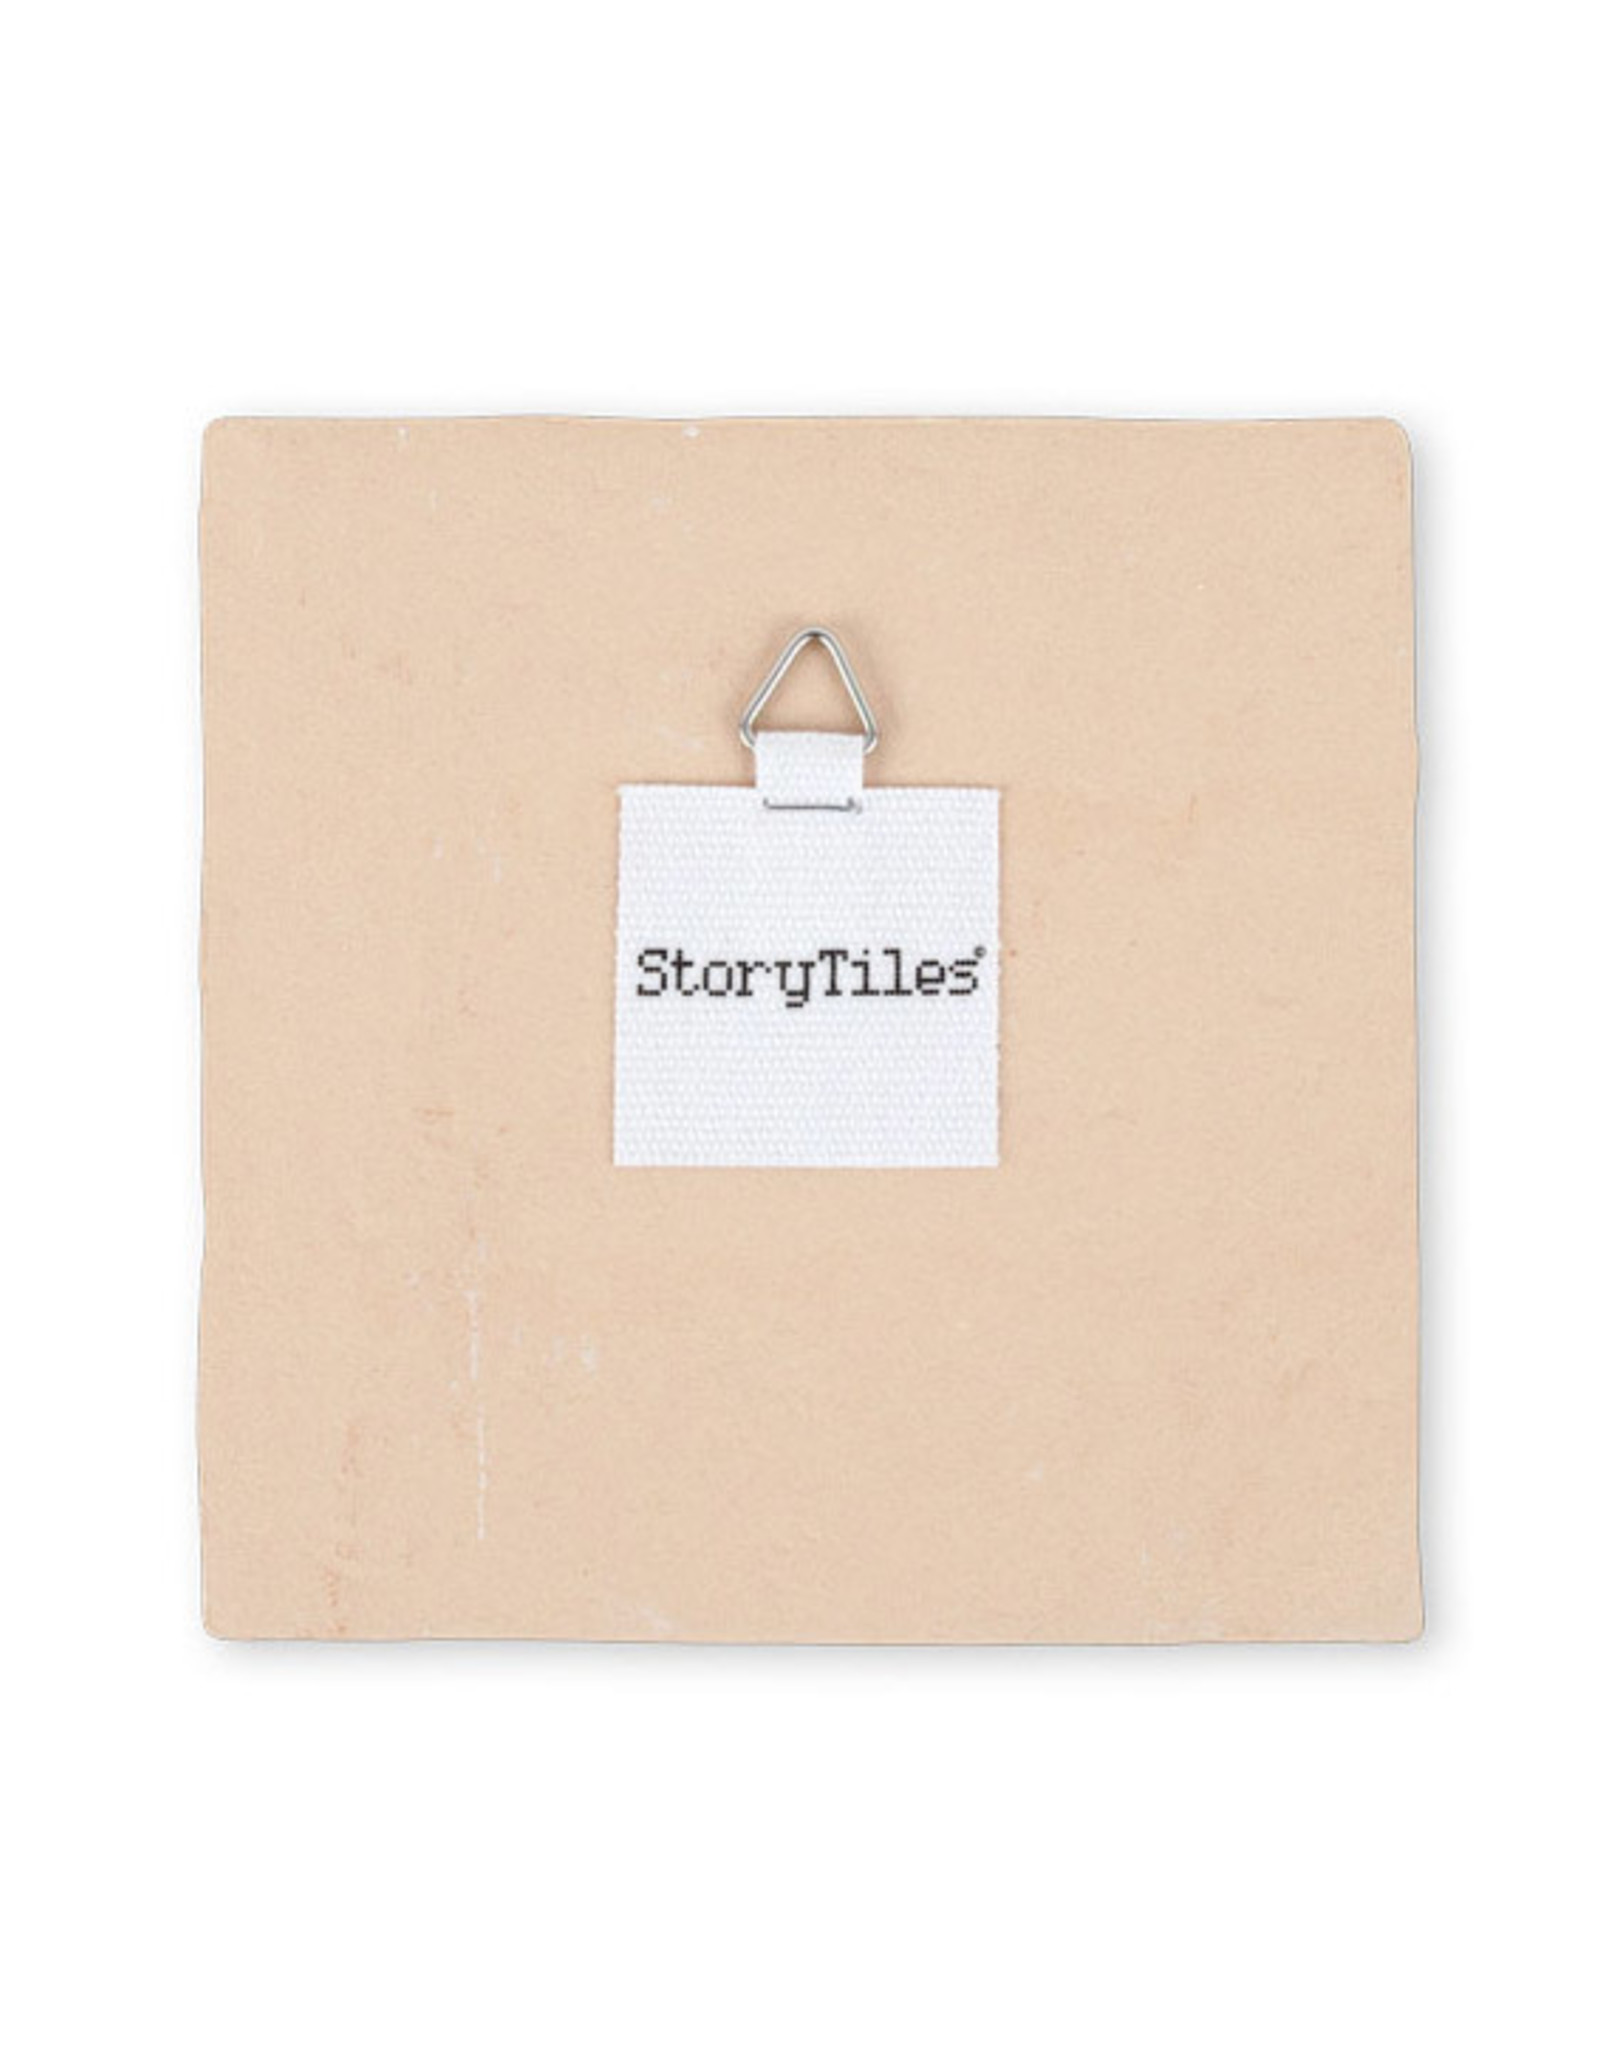 StoryTiles "the bell ringer" Tile